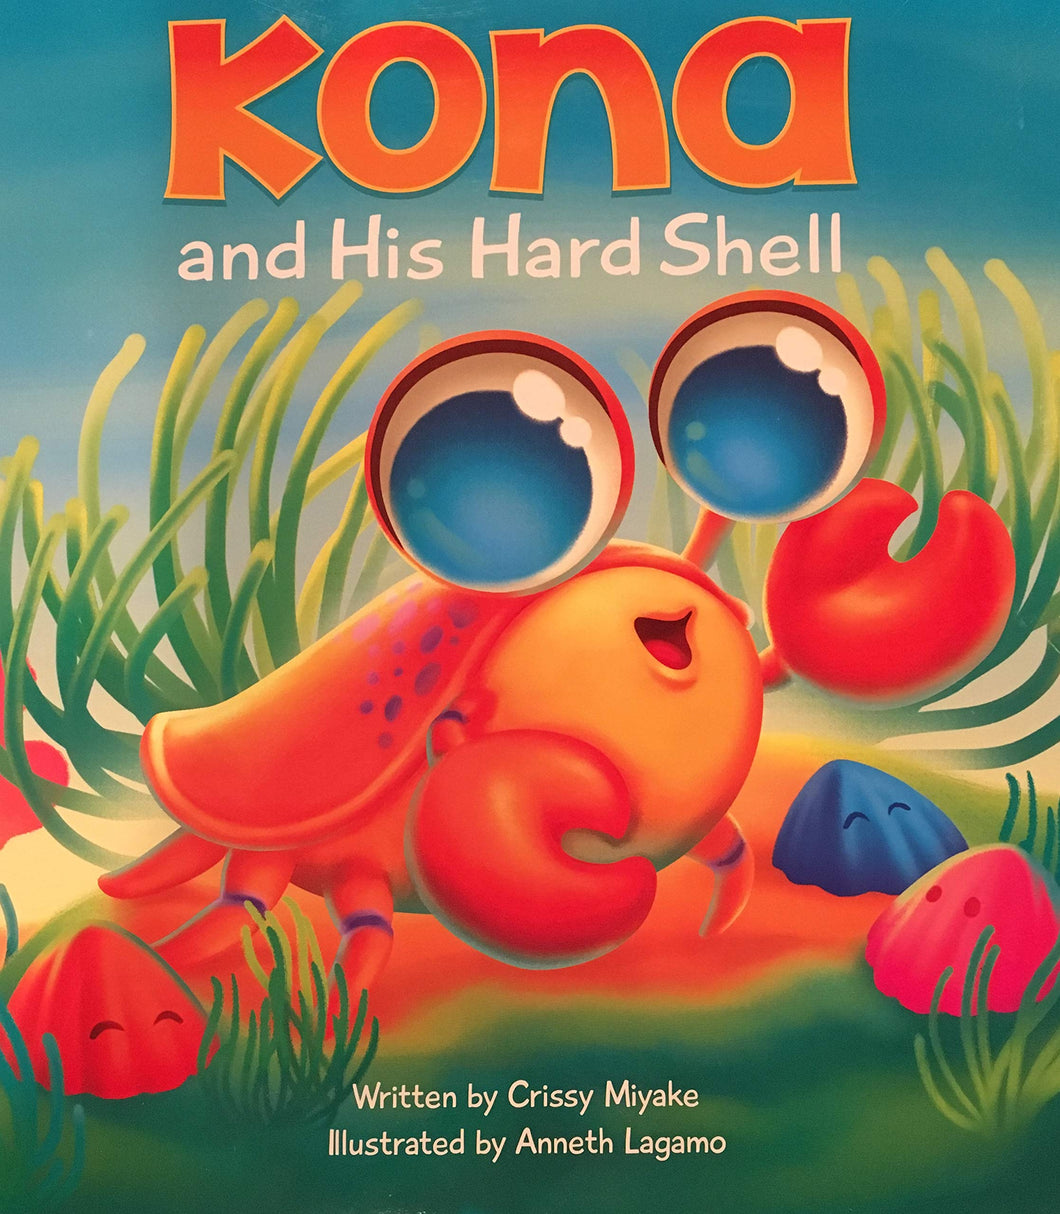 Kona and His Hard Shell by Crissy Miyake